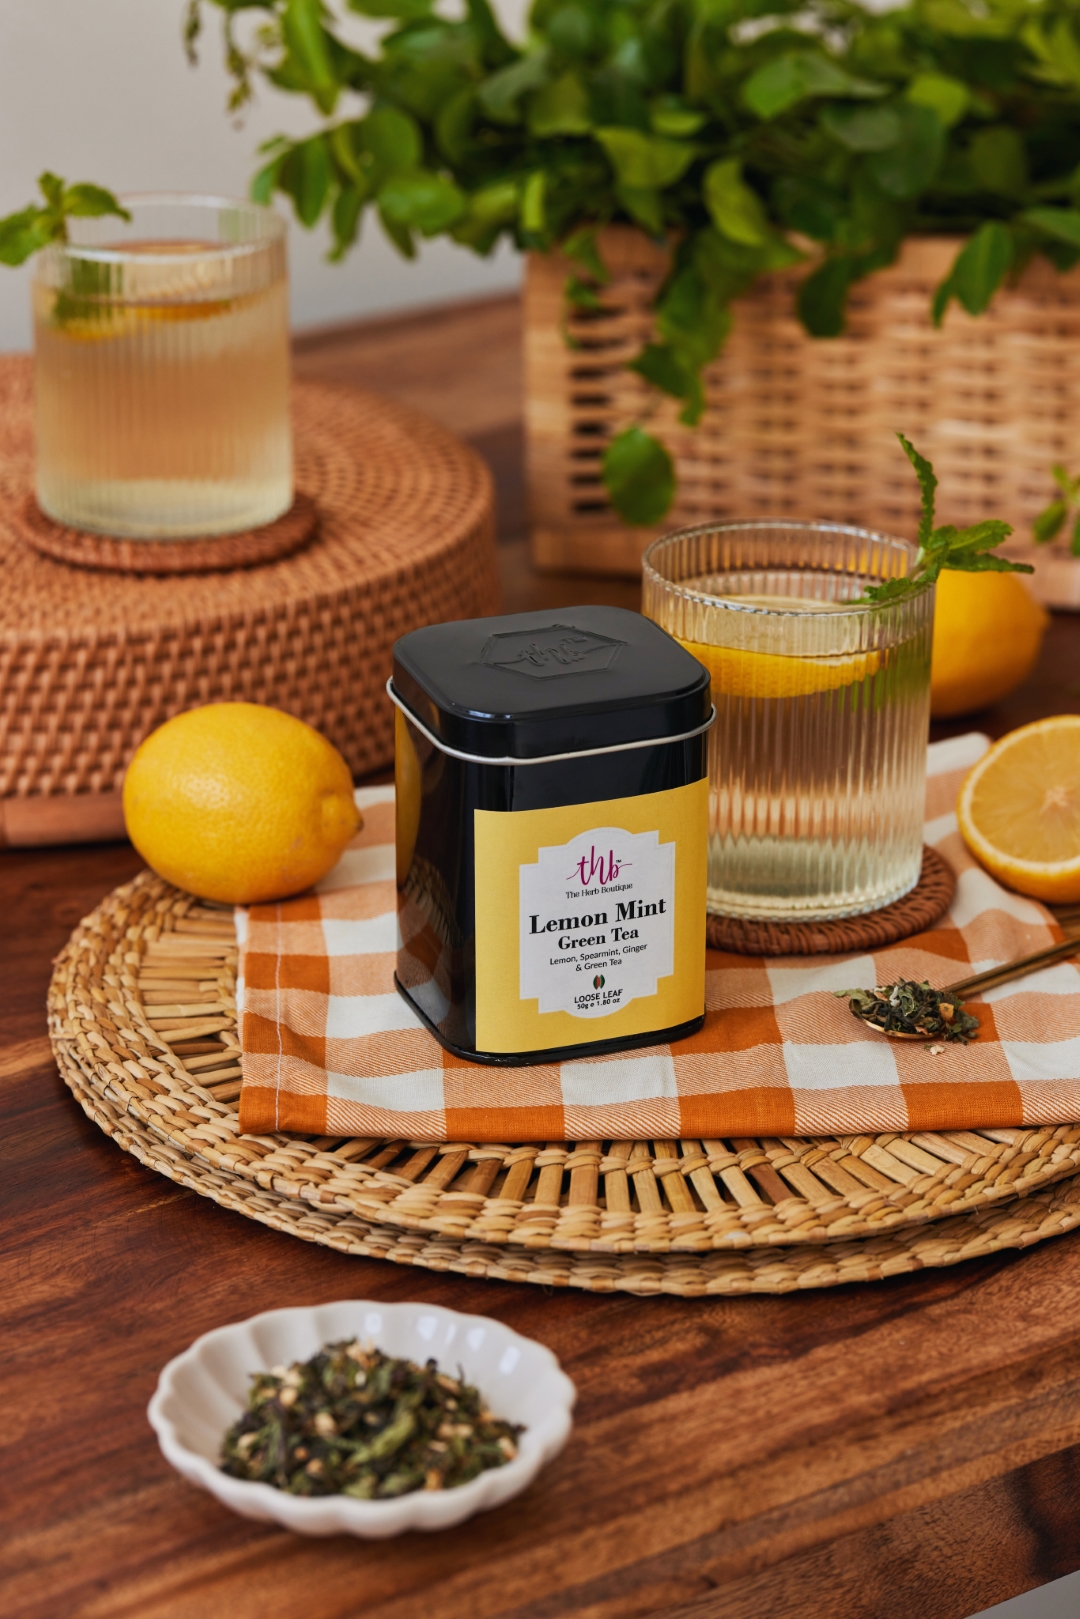 Product: The Herb Boutique Lemon Mint Green Tea